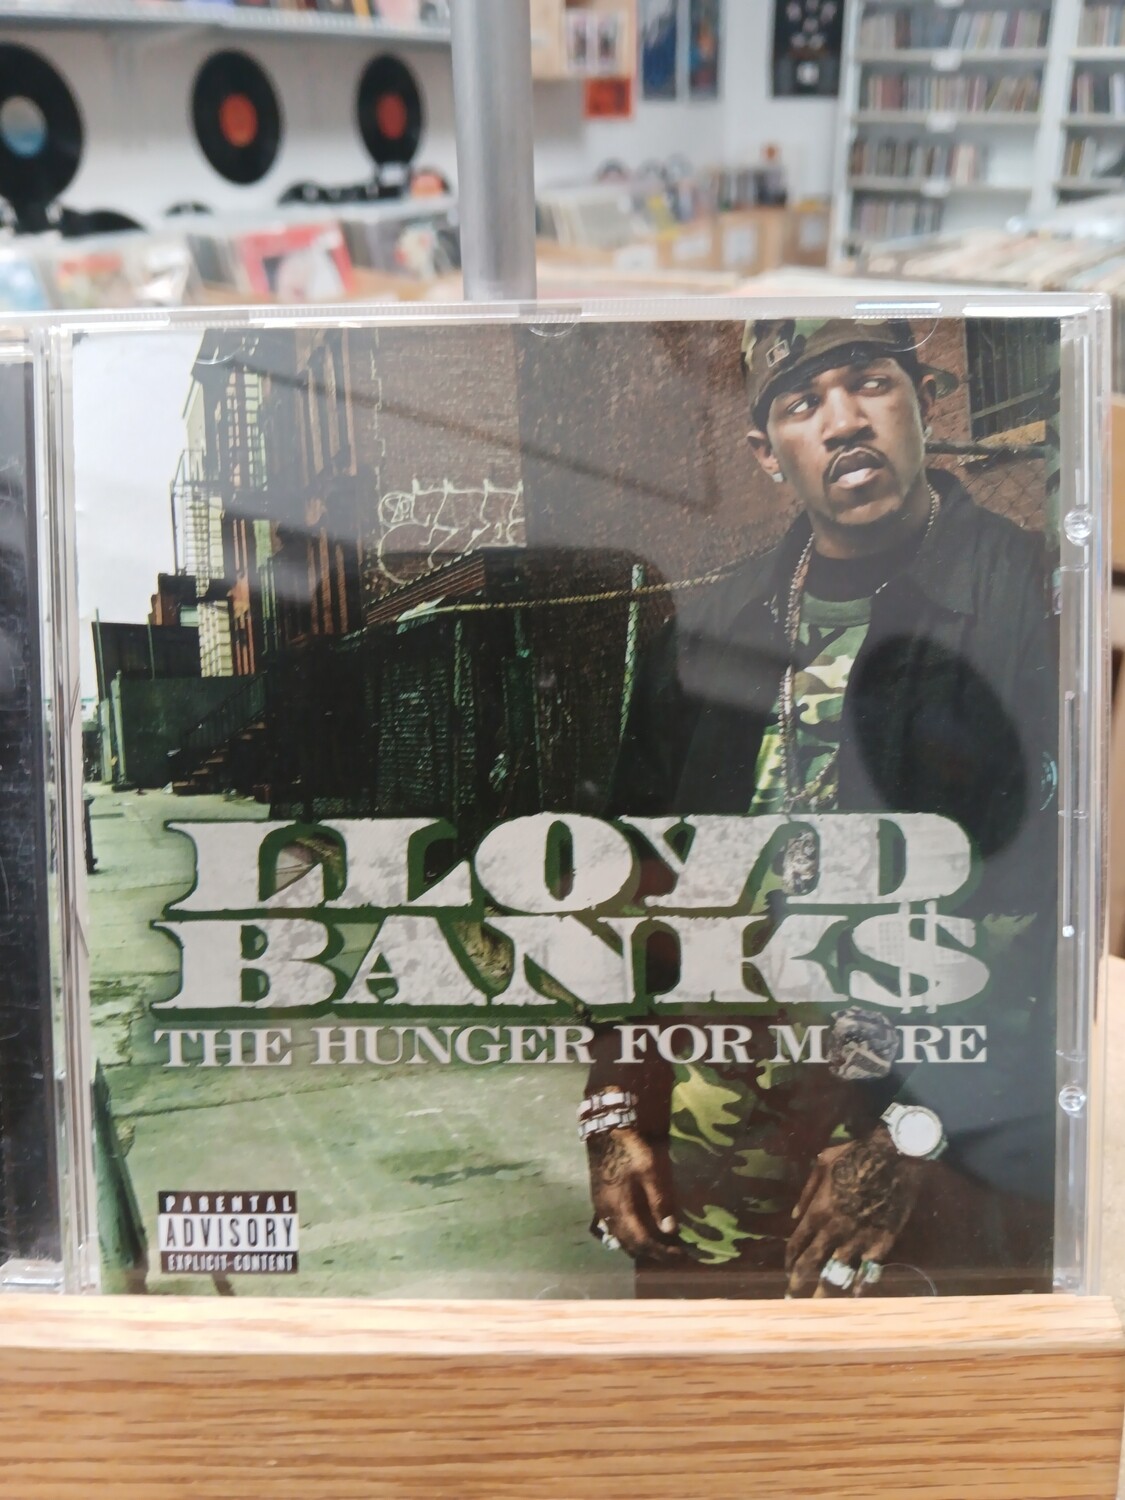 LLOYD BANKS - The Hunger for More (CD)